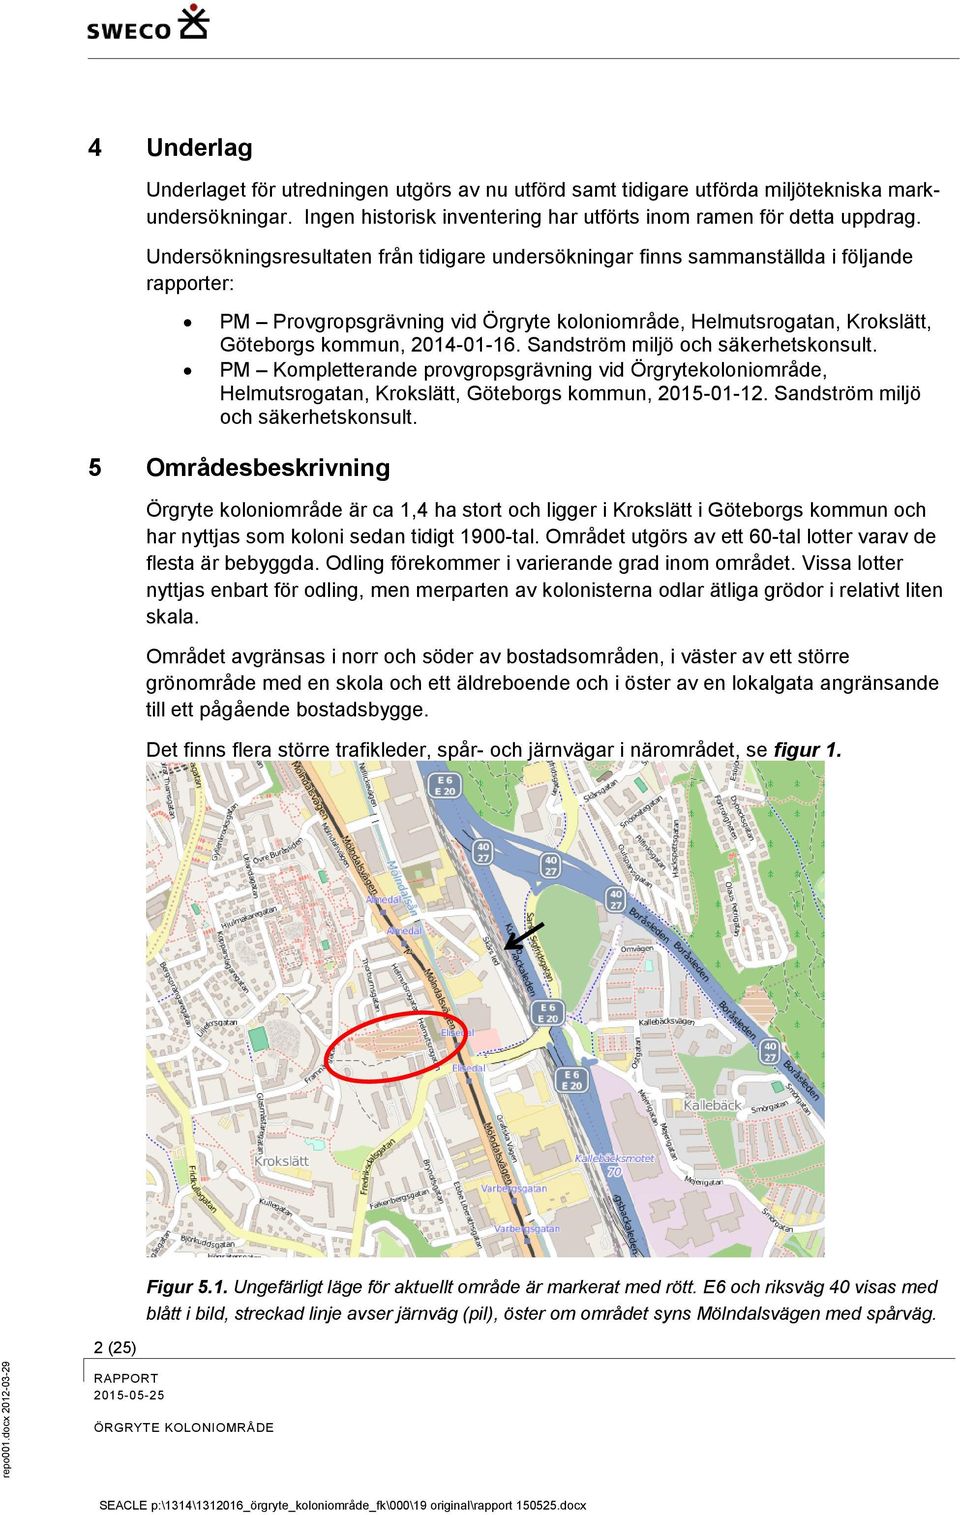 Undersökningsresultaten från tidigare undersökningar finns sammanställda i följande rapporter: PM Provgropsgrävning vid Örgryte koloniområde, Helmutsrogatan, Krokslätt, Göteborgs kommun, 2014-01-16.